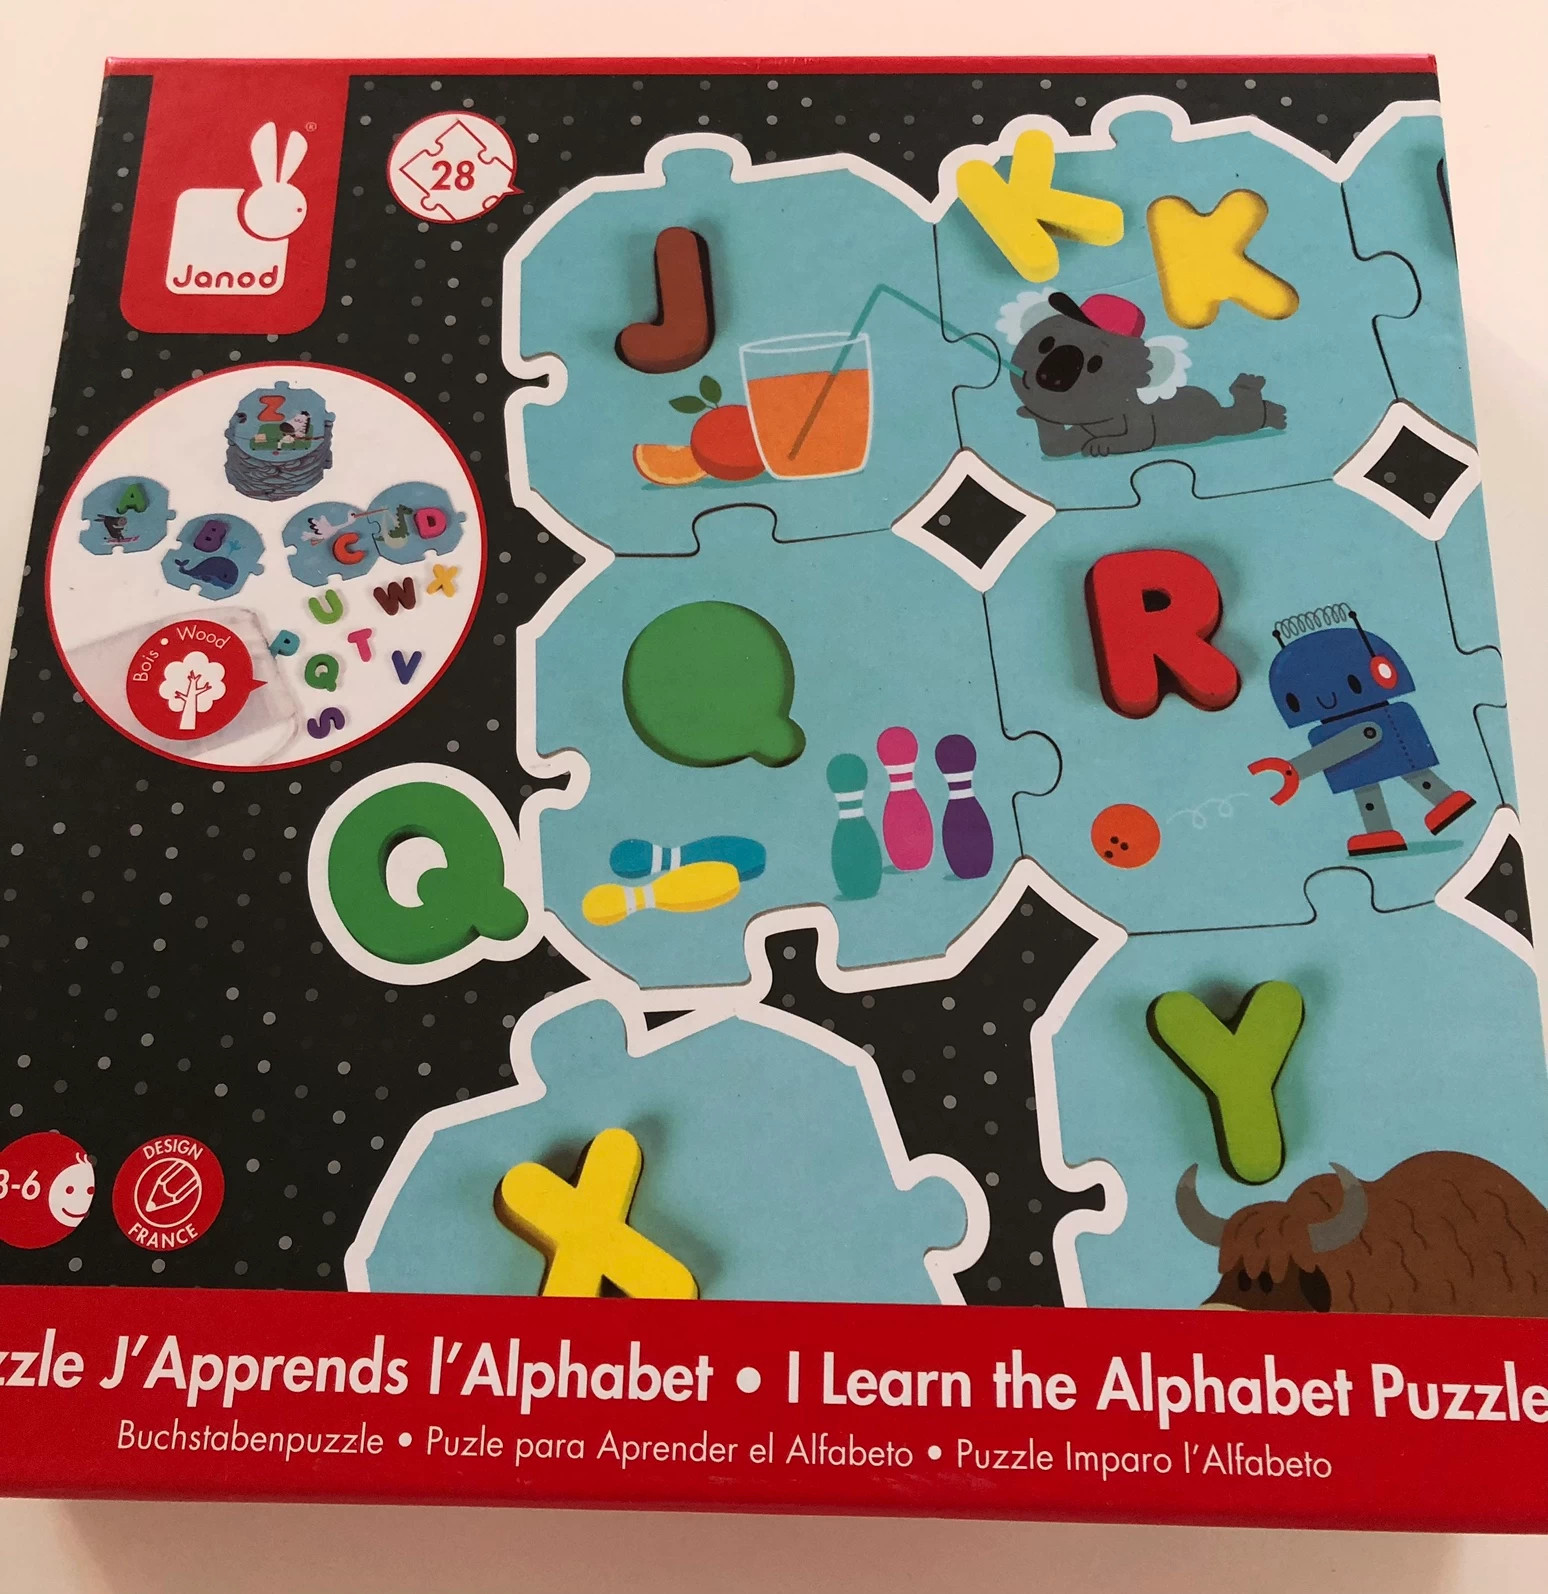 Puzzle j'apprends l'alphabet - Janod -Onzo Kids